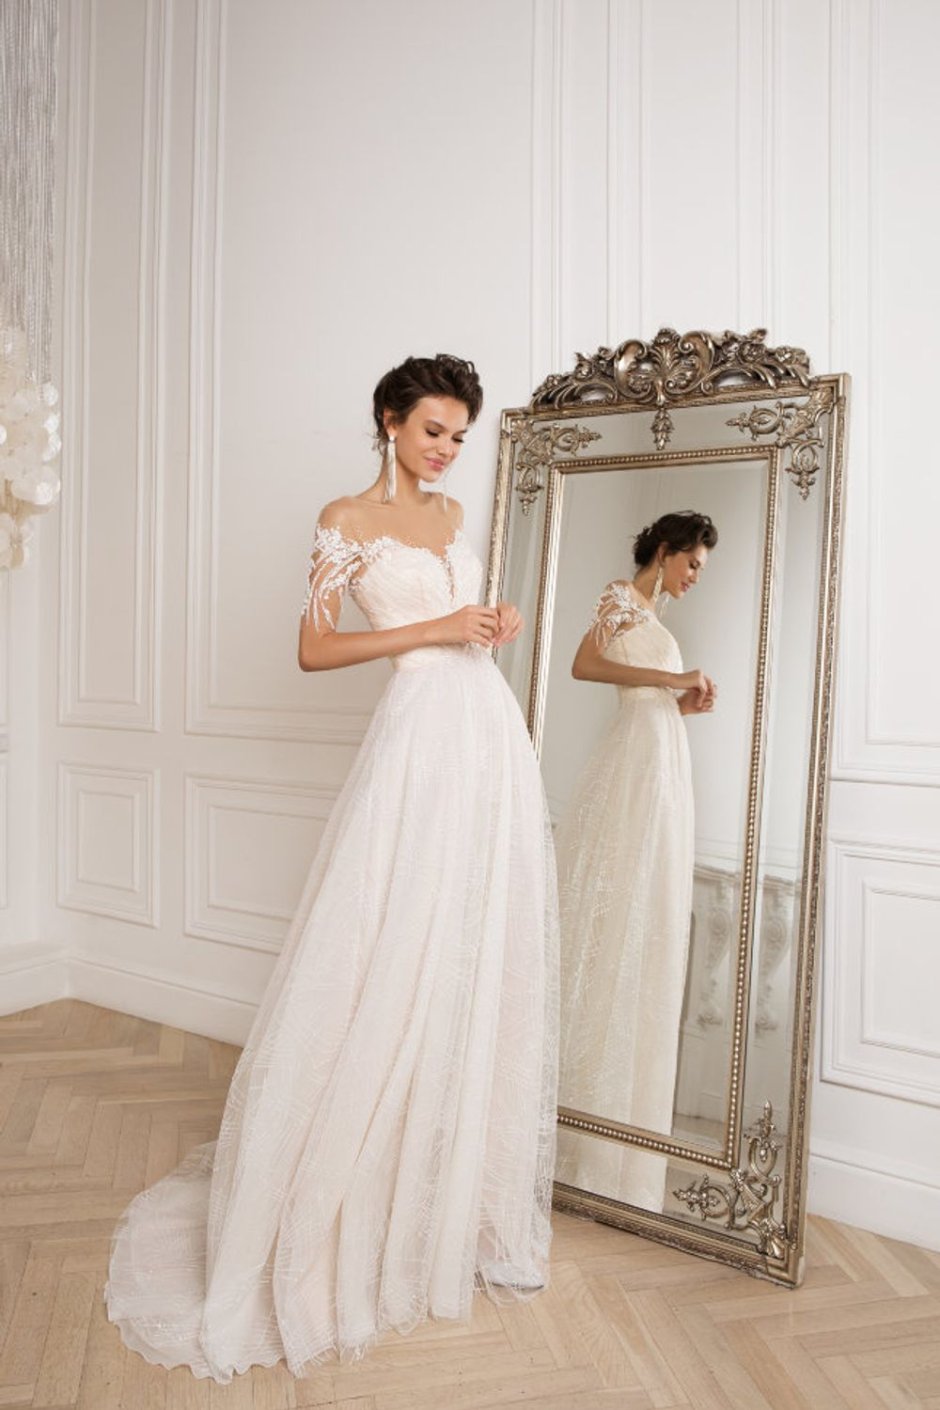 Модели в свадебных платьях в журналах